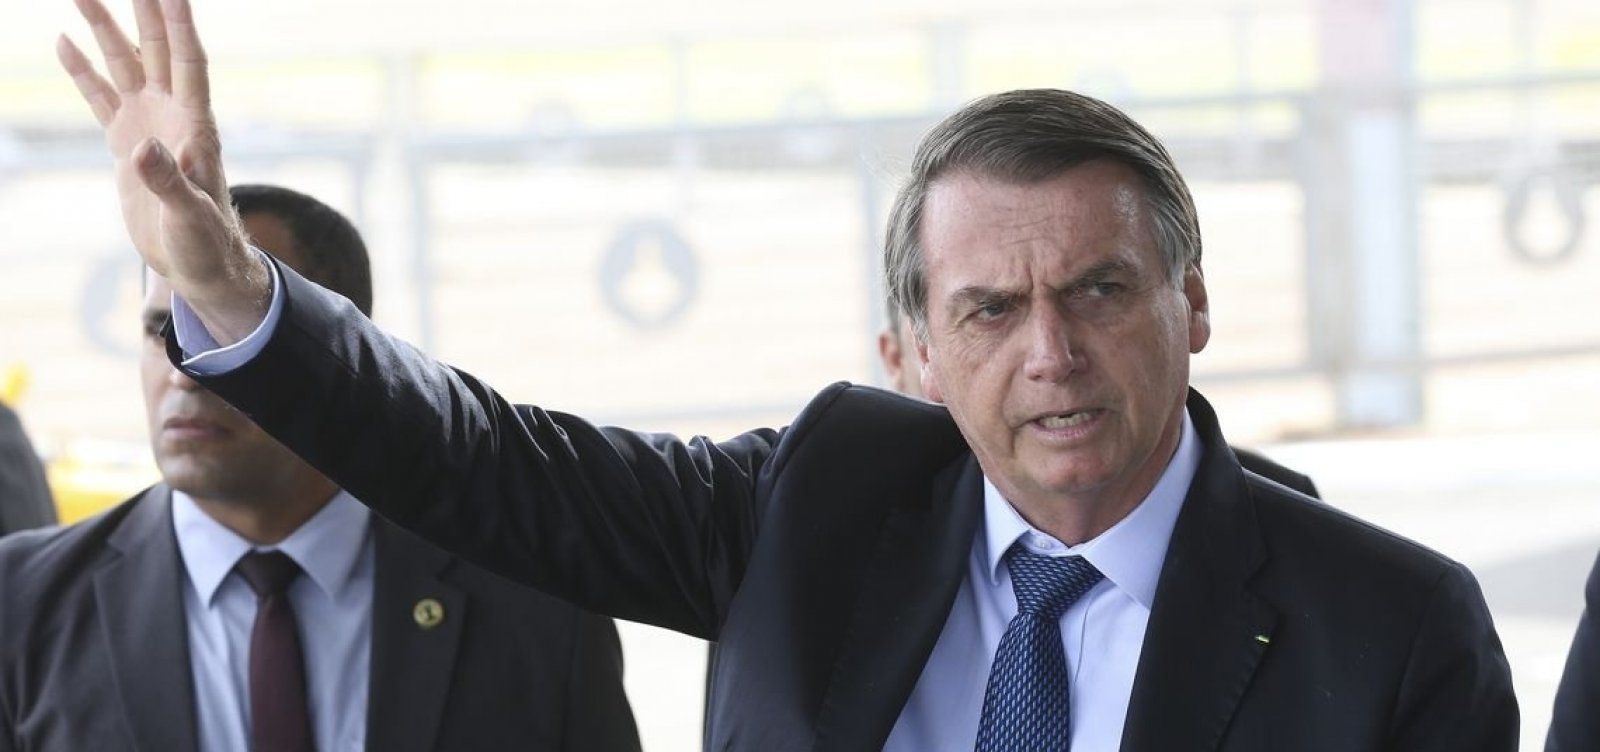 'Um dos dois, ou os dois perderão a cabeça', diz Bolsonaro sobre funcionários de Economia